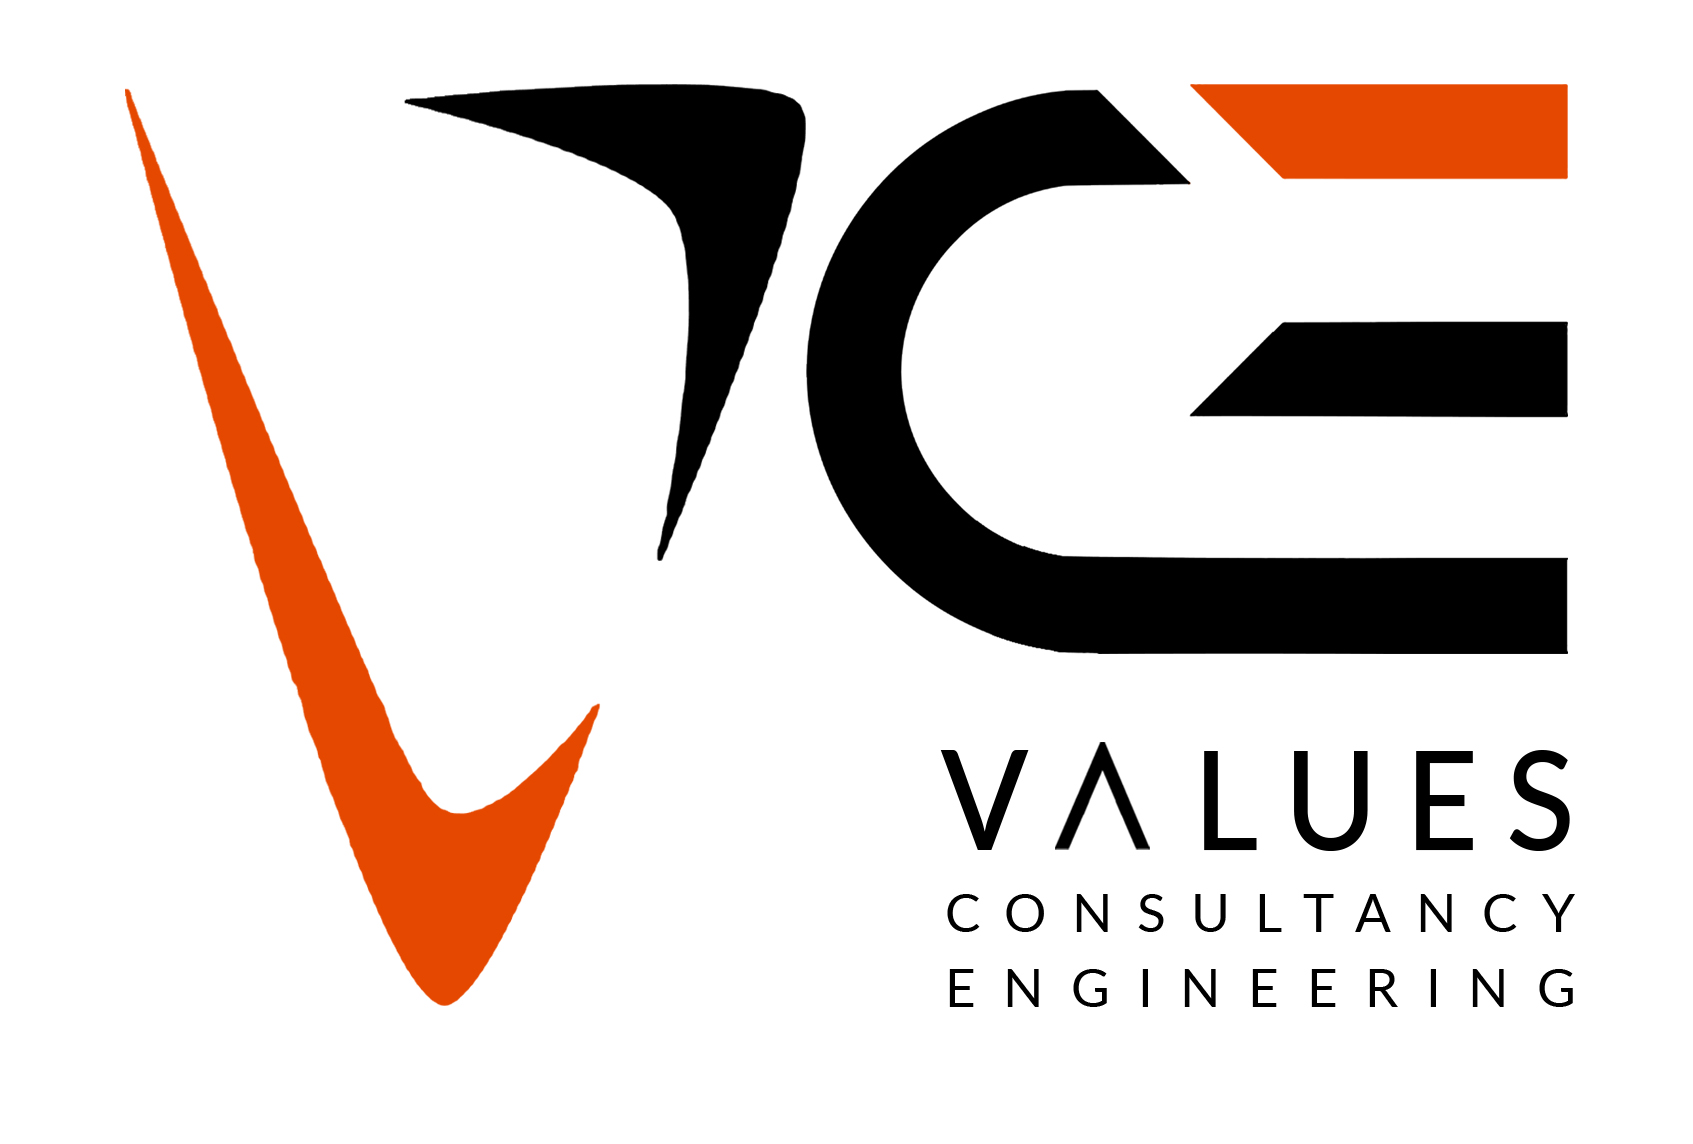 Values Engineering